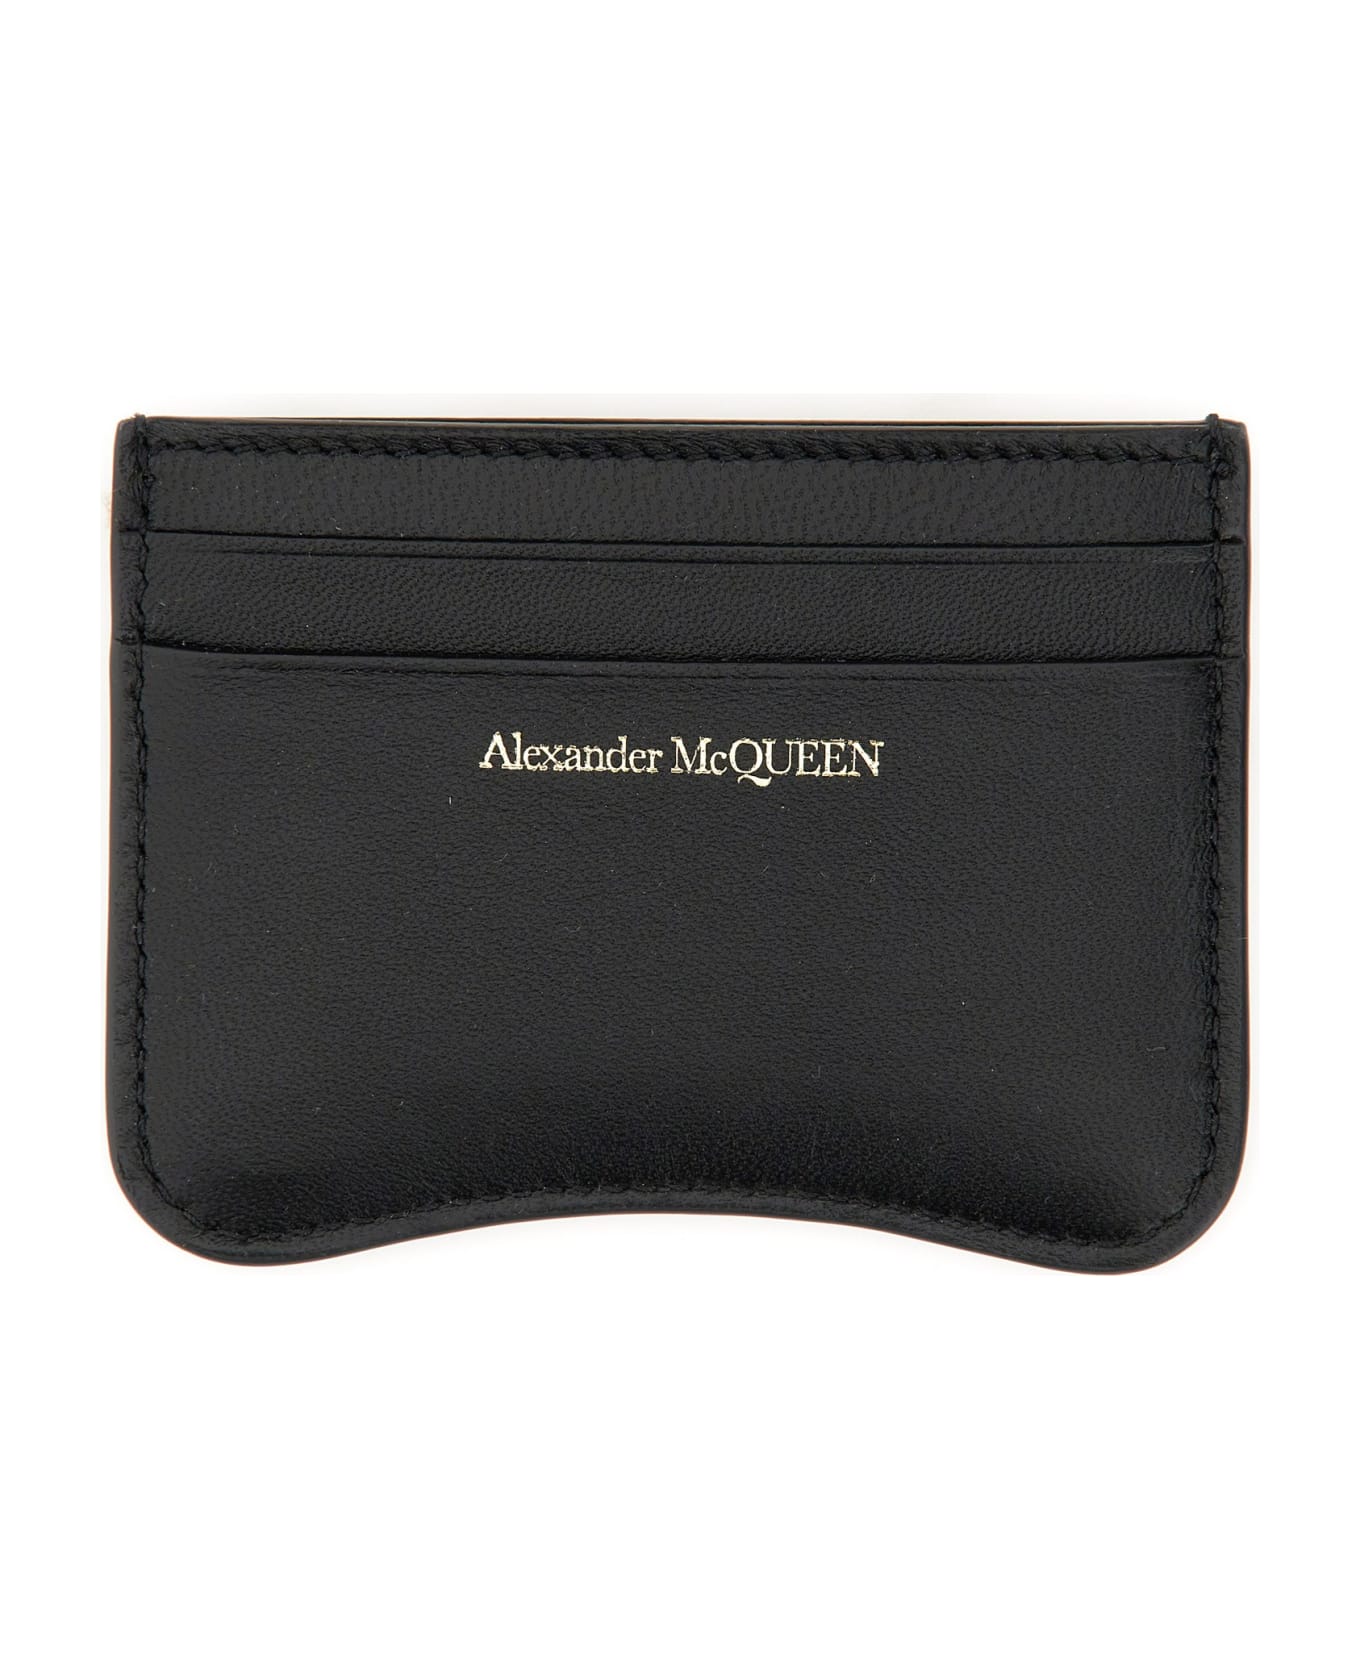 Alexander McQueen The Seal Card Case - NERO